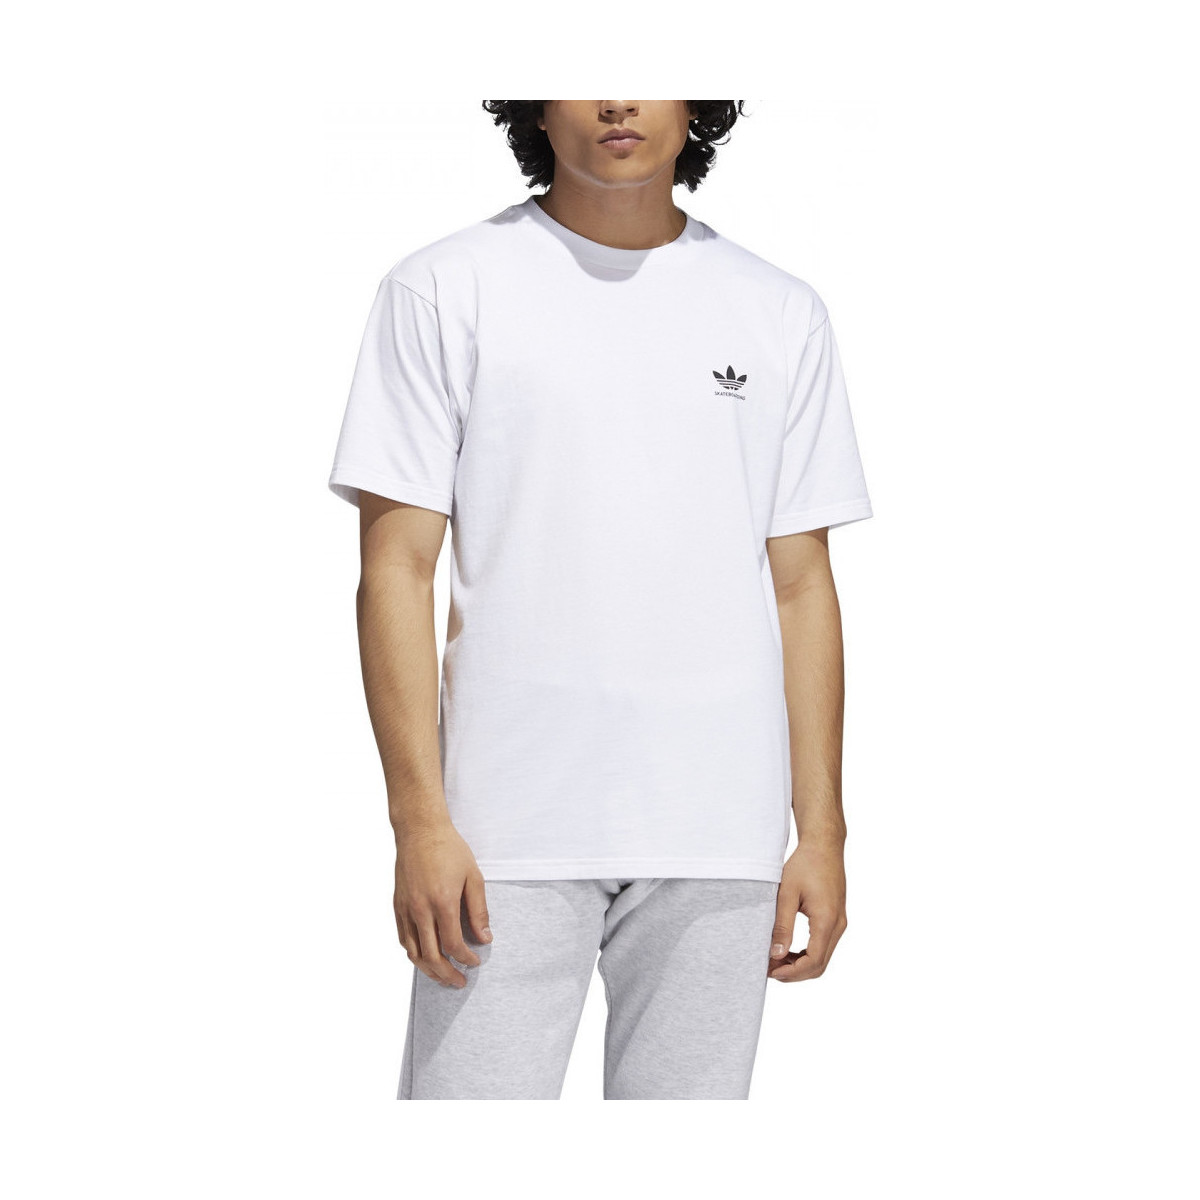 Υφασμάτινα Άνδρας T-shirts & Μπλούζες adidas Originals 2.0 logo ss tee Άσπρο